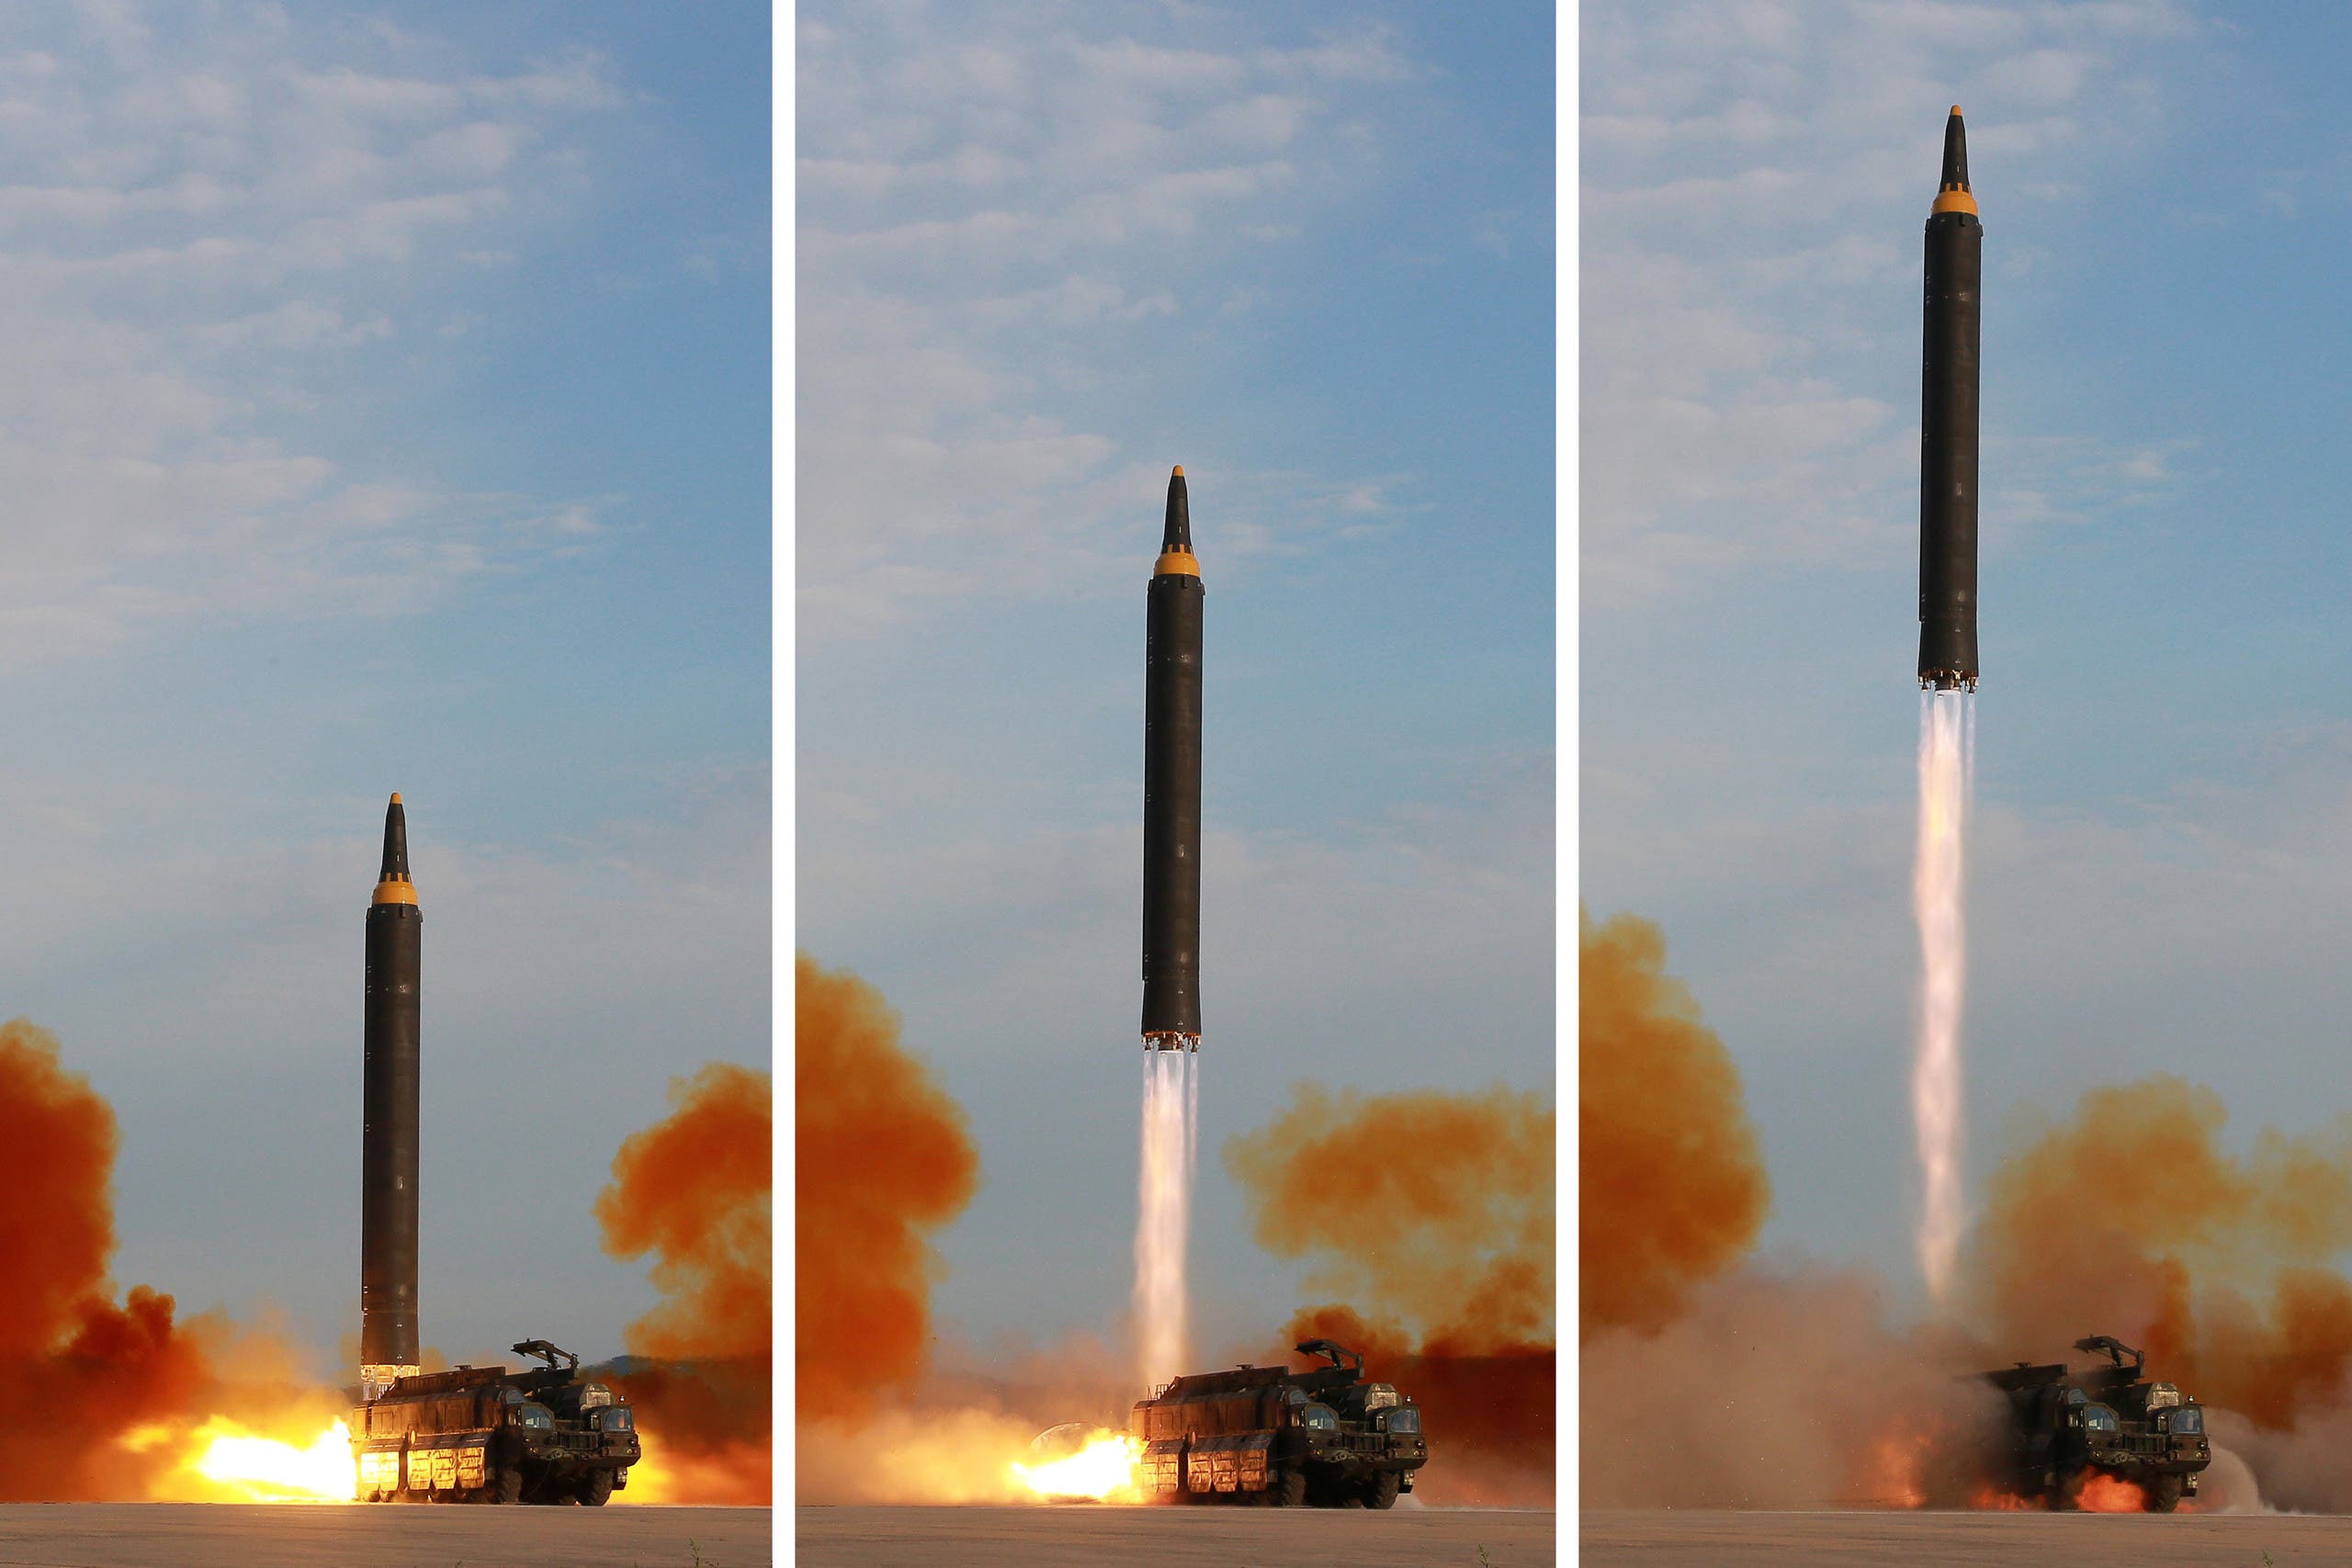 كوريا الشمالية _ صاروخ باليستي متوسط المدى من طراز هواسونغ-12